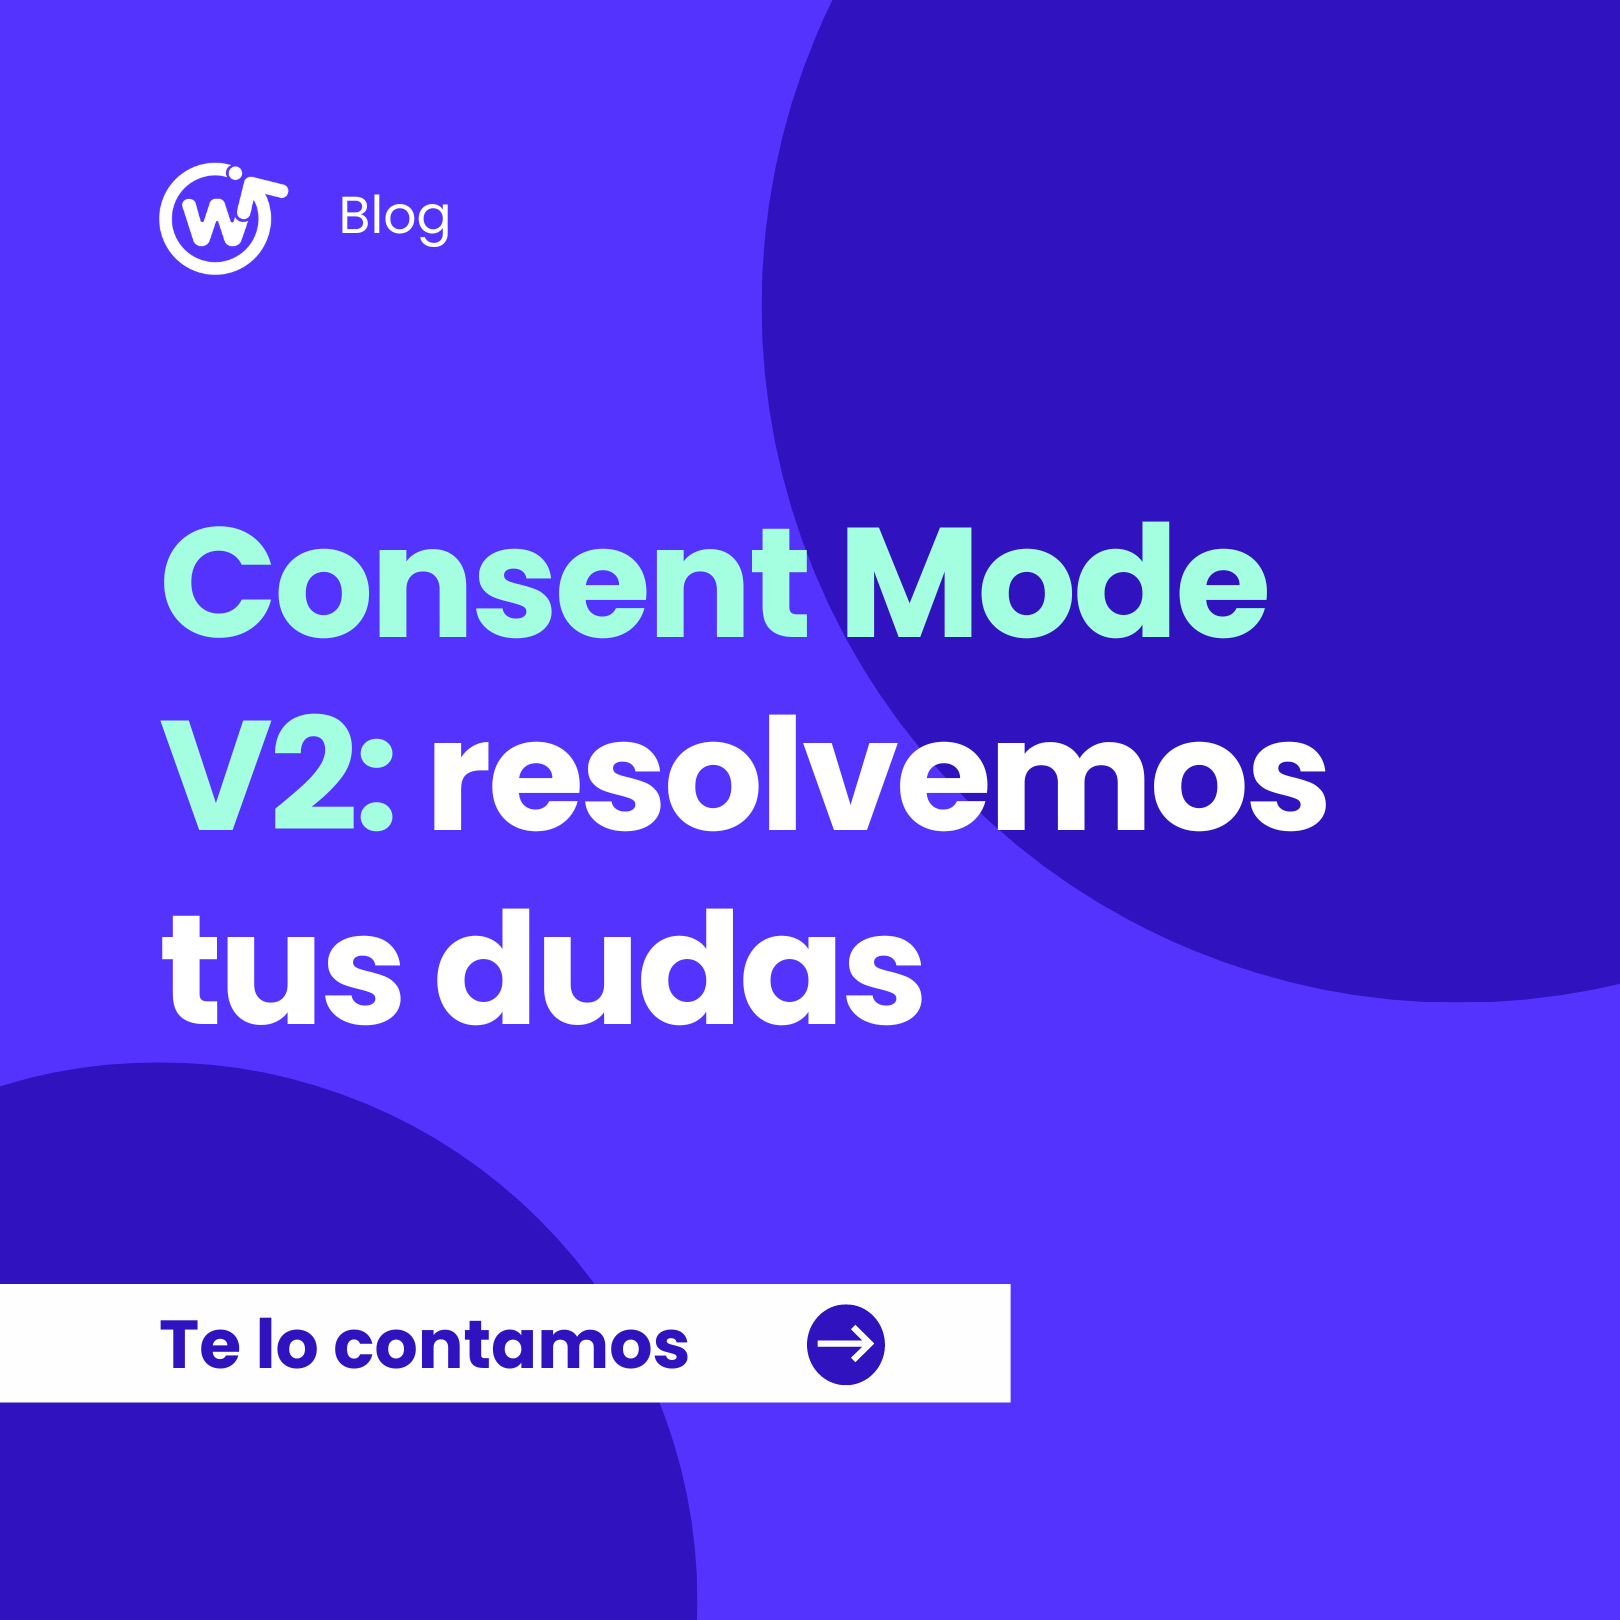 Consent Mode V2: resolvemos tus dudas